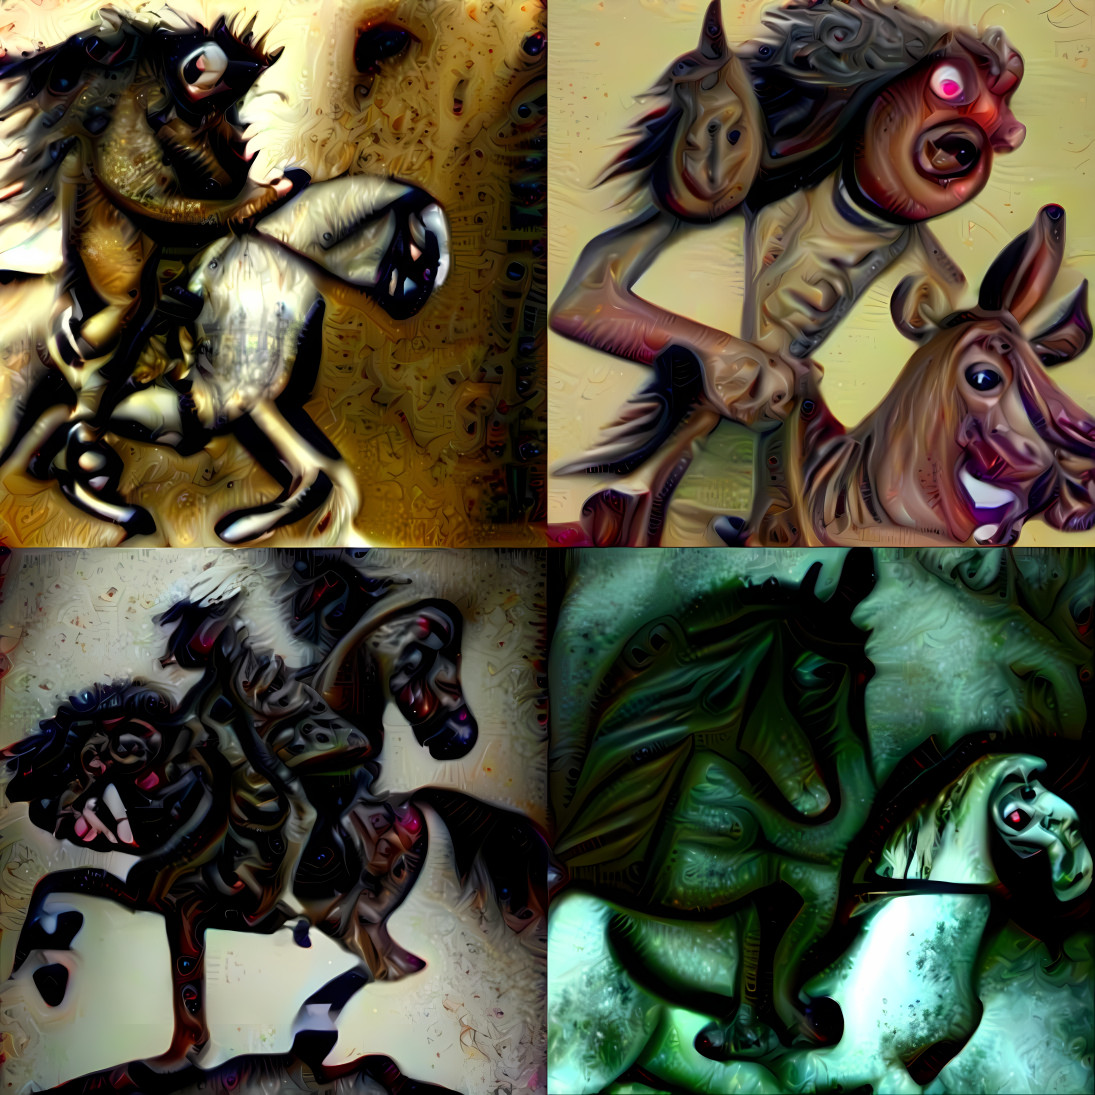 The four horsemen